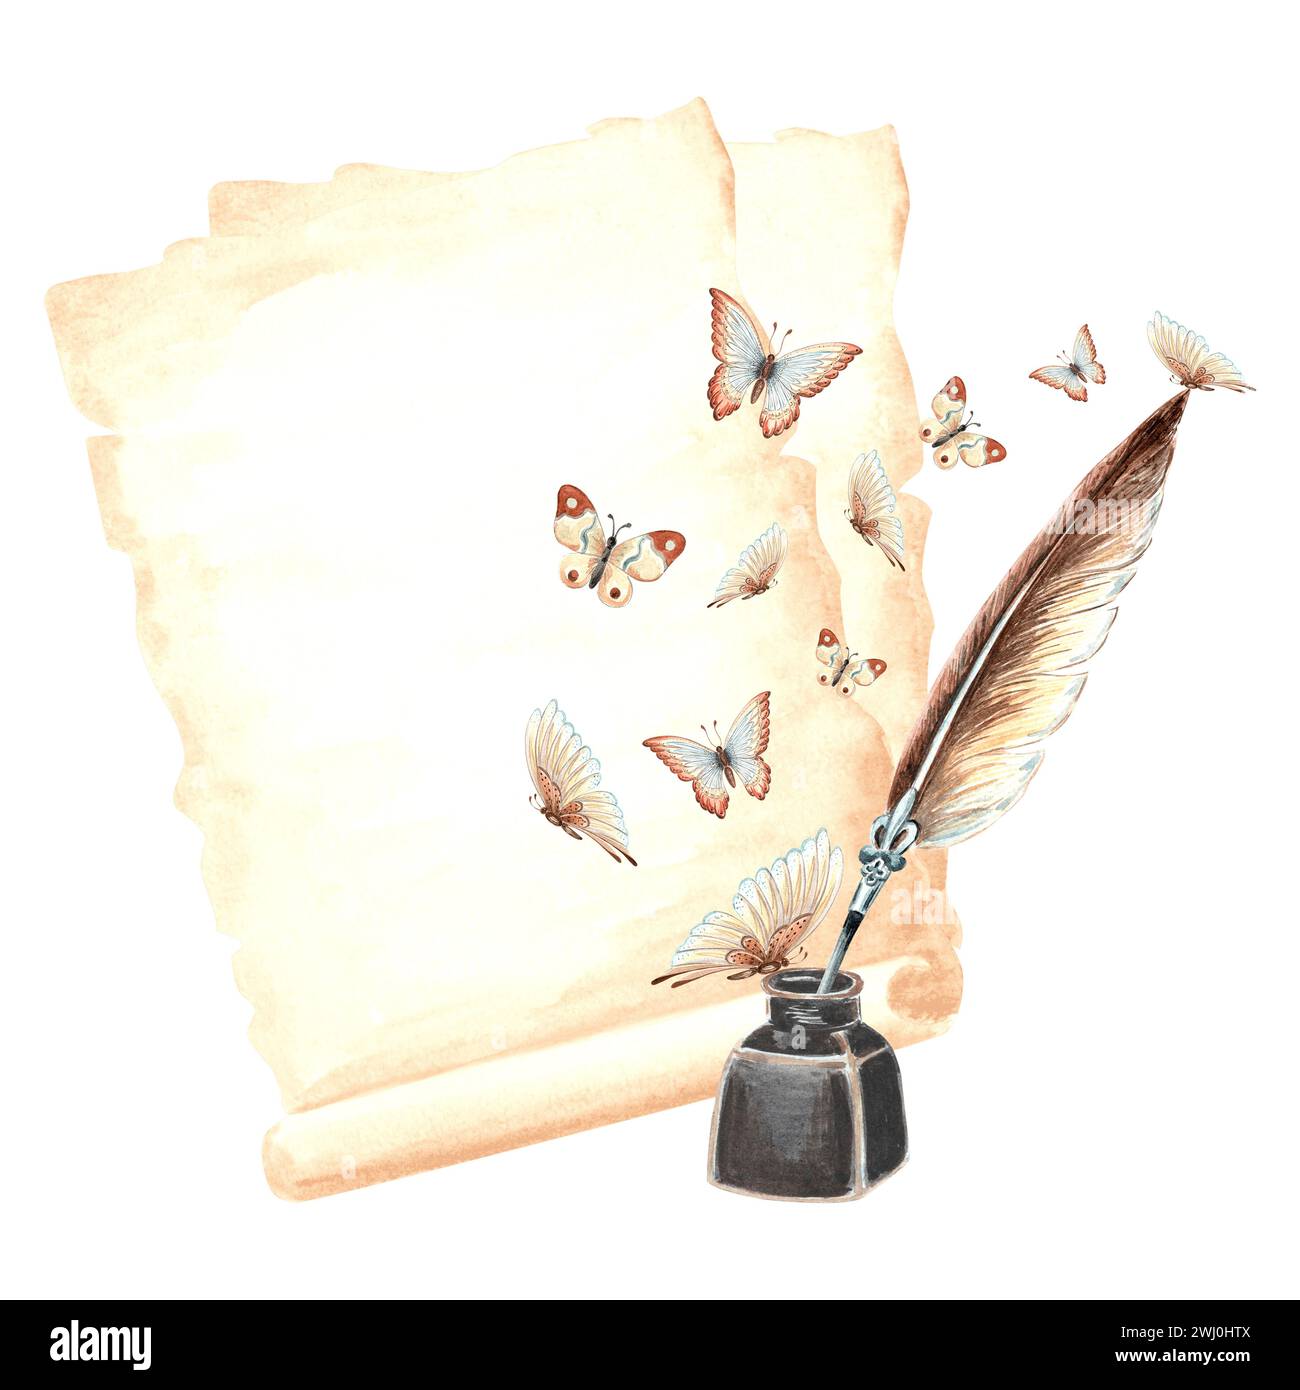 Blätter Papyruspapier, Tintenfass mit Federstift und wild flatternde Schmetterlinge. Vintage Schreibzubehör, alter Brief. Handgezeichnetes Aquarellisolat Stockfoto